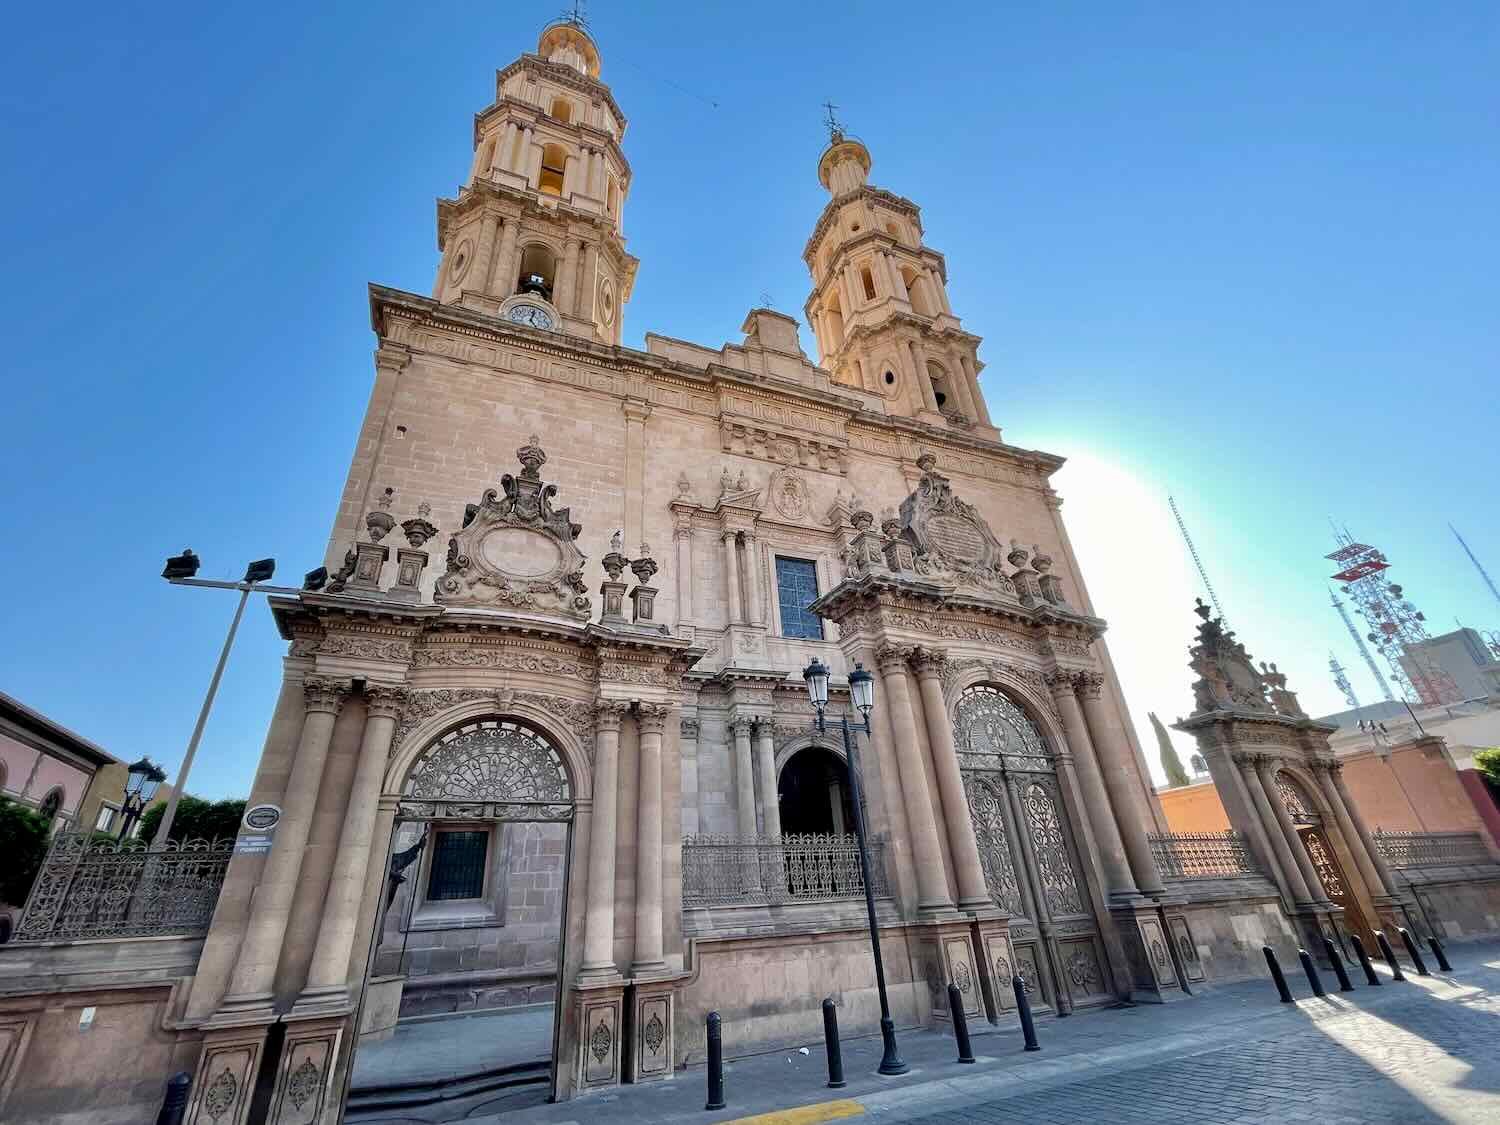 Cathedral Nuestra Señora de la Luz (Our Lady of the Light)